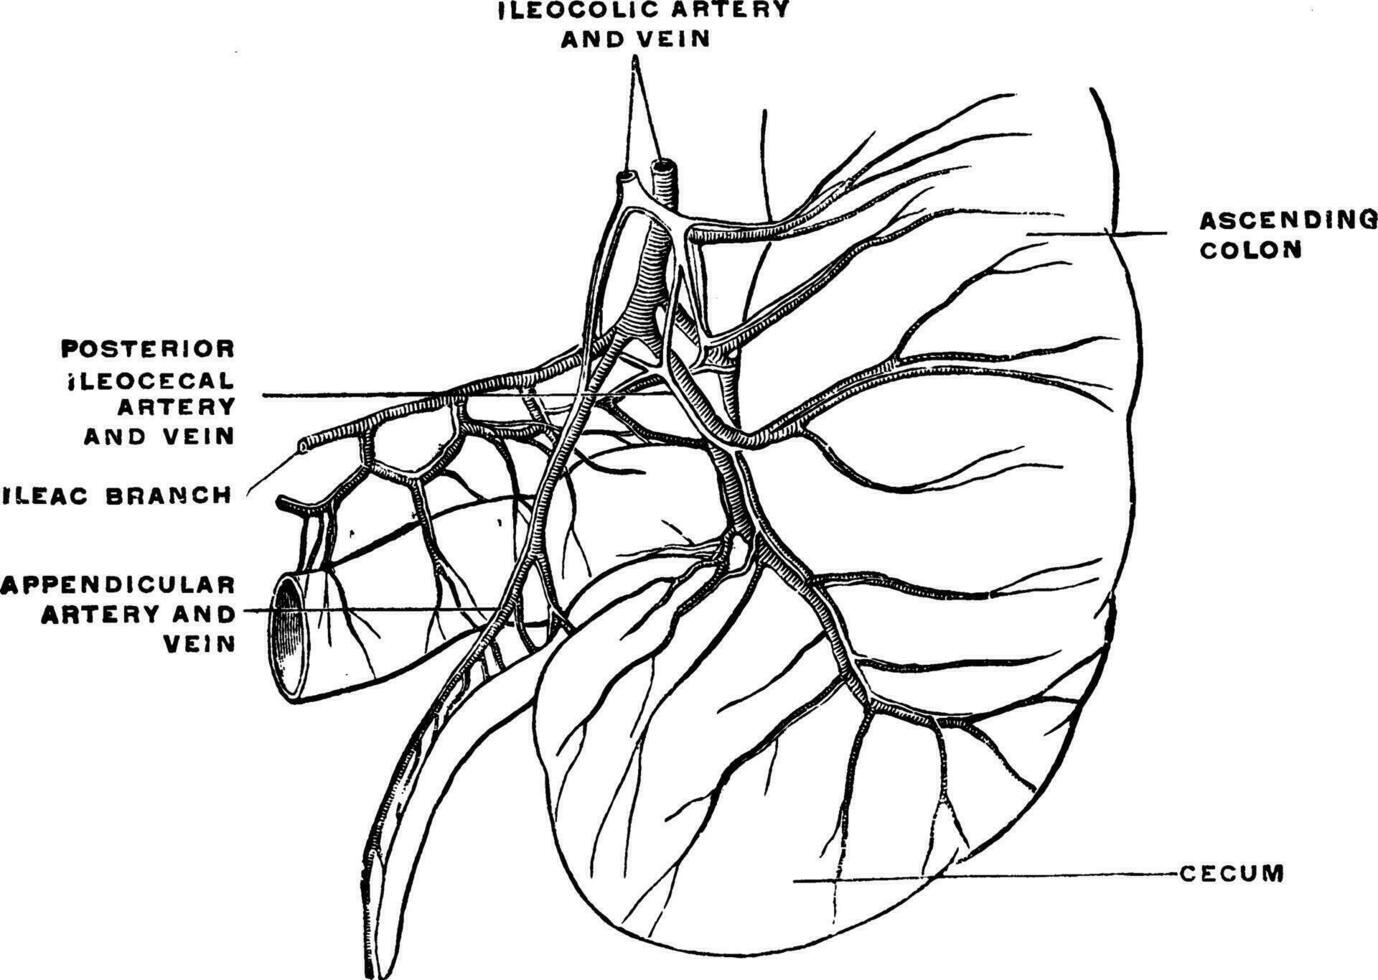 Arterien und Venen von das Blinddarm und Anhang, Jahrgang Illustration. vektor